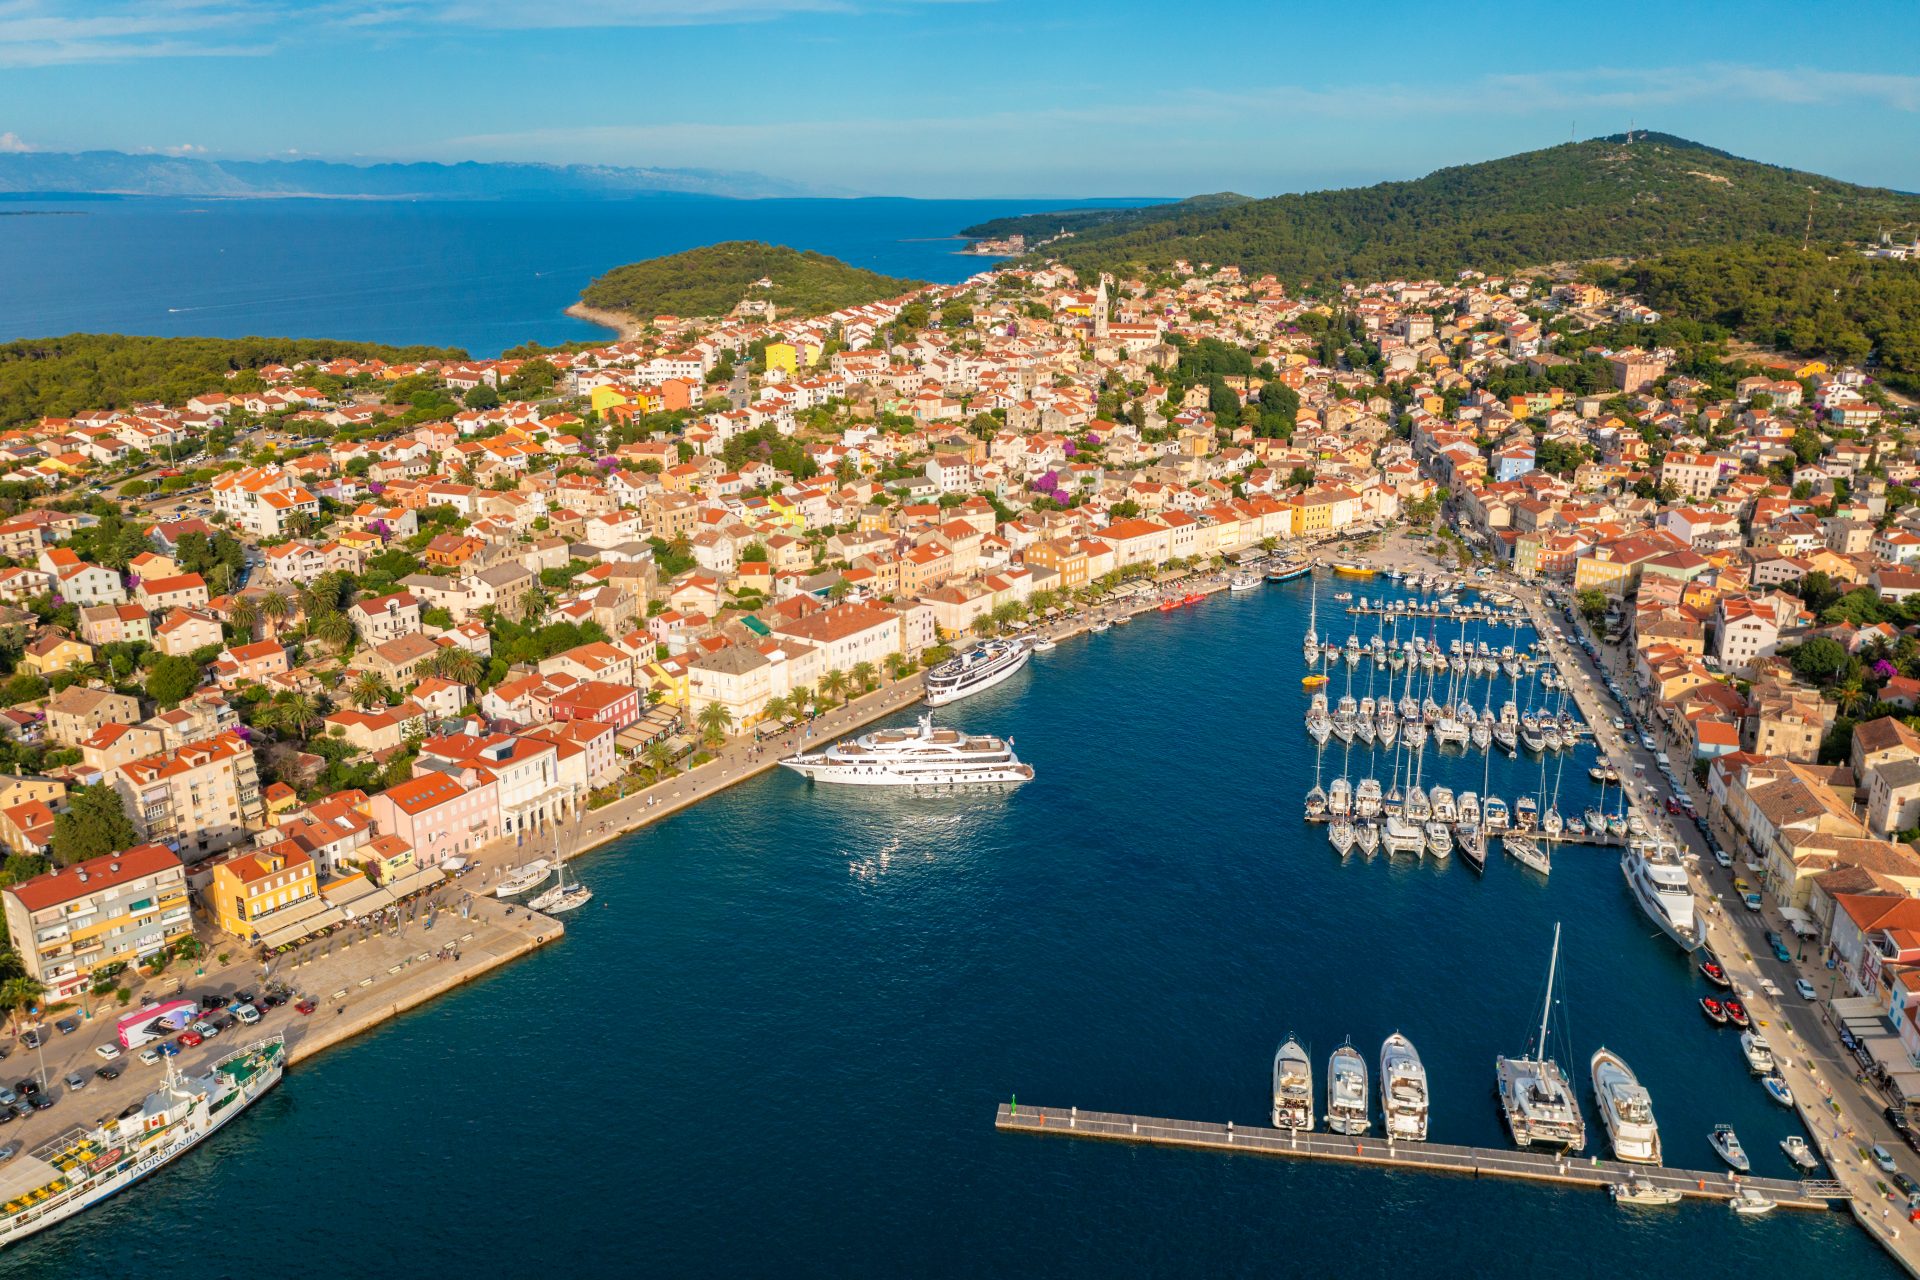 <p><strong>Où ?<br> </strong>Dans la Mer Adriatique, dans la baie de Kvarner.</p> <p><strong>Comment s'y rendre ?<br> </strong>En voiture depuis l'île de Cres, en ferry depuis Zadar, Pula, Rijeka.</p> <p><strong>Que faire sur cette île ?<br> </strong>Se baigner dans ses eaux transparentes, visiter ses villages comme Veli Losinj et Sv Jakov, admirer un magnifique coucher du soleil depuis le Providenca Tematski Vidikovac.</p>